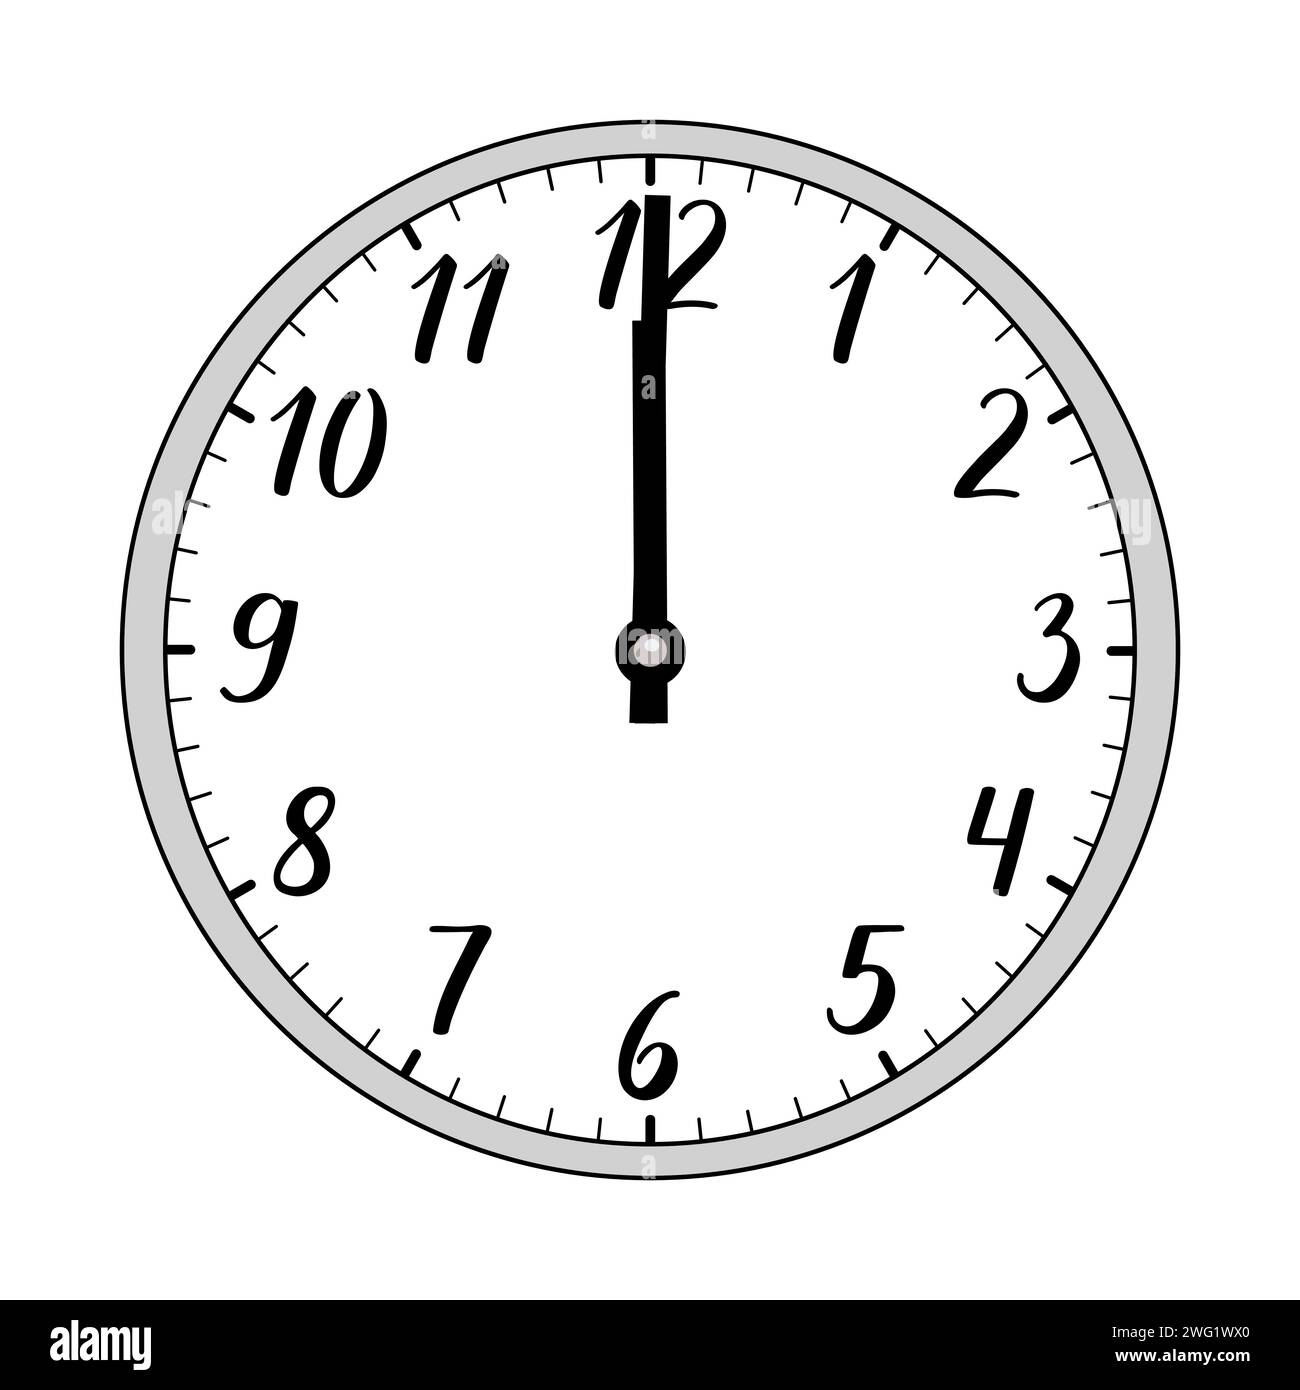 Immagine vettoriale di un orologio analogico 24 ore su 24 che mostra 12 ore del giorno o 24 ore della notte. L'orologio ha una cornice grigia e numeri scritti a mano. Illustrazione Vettoriale